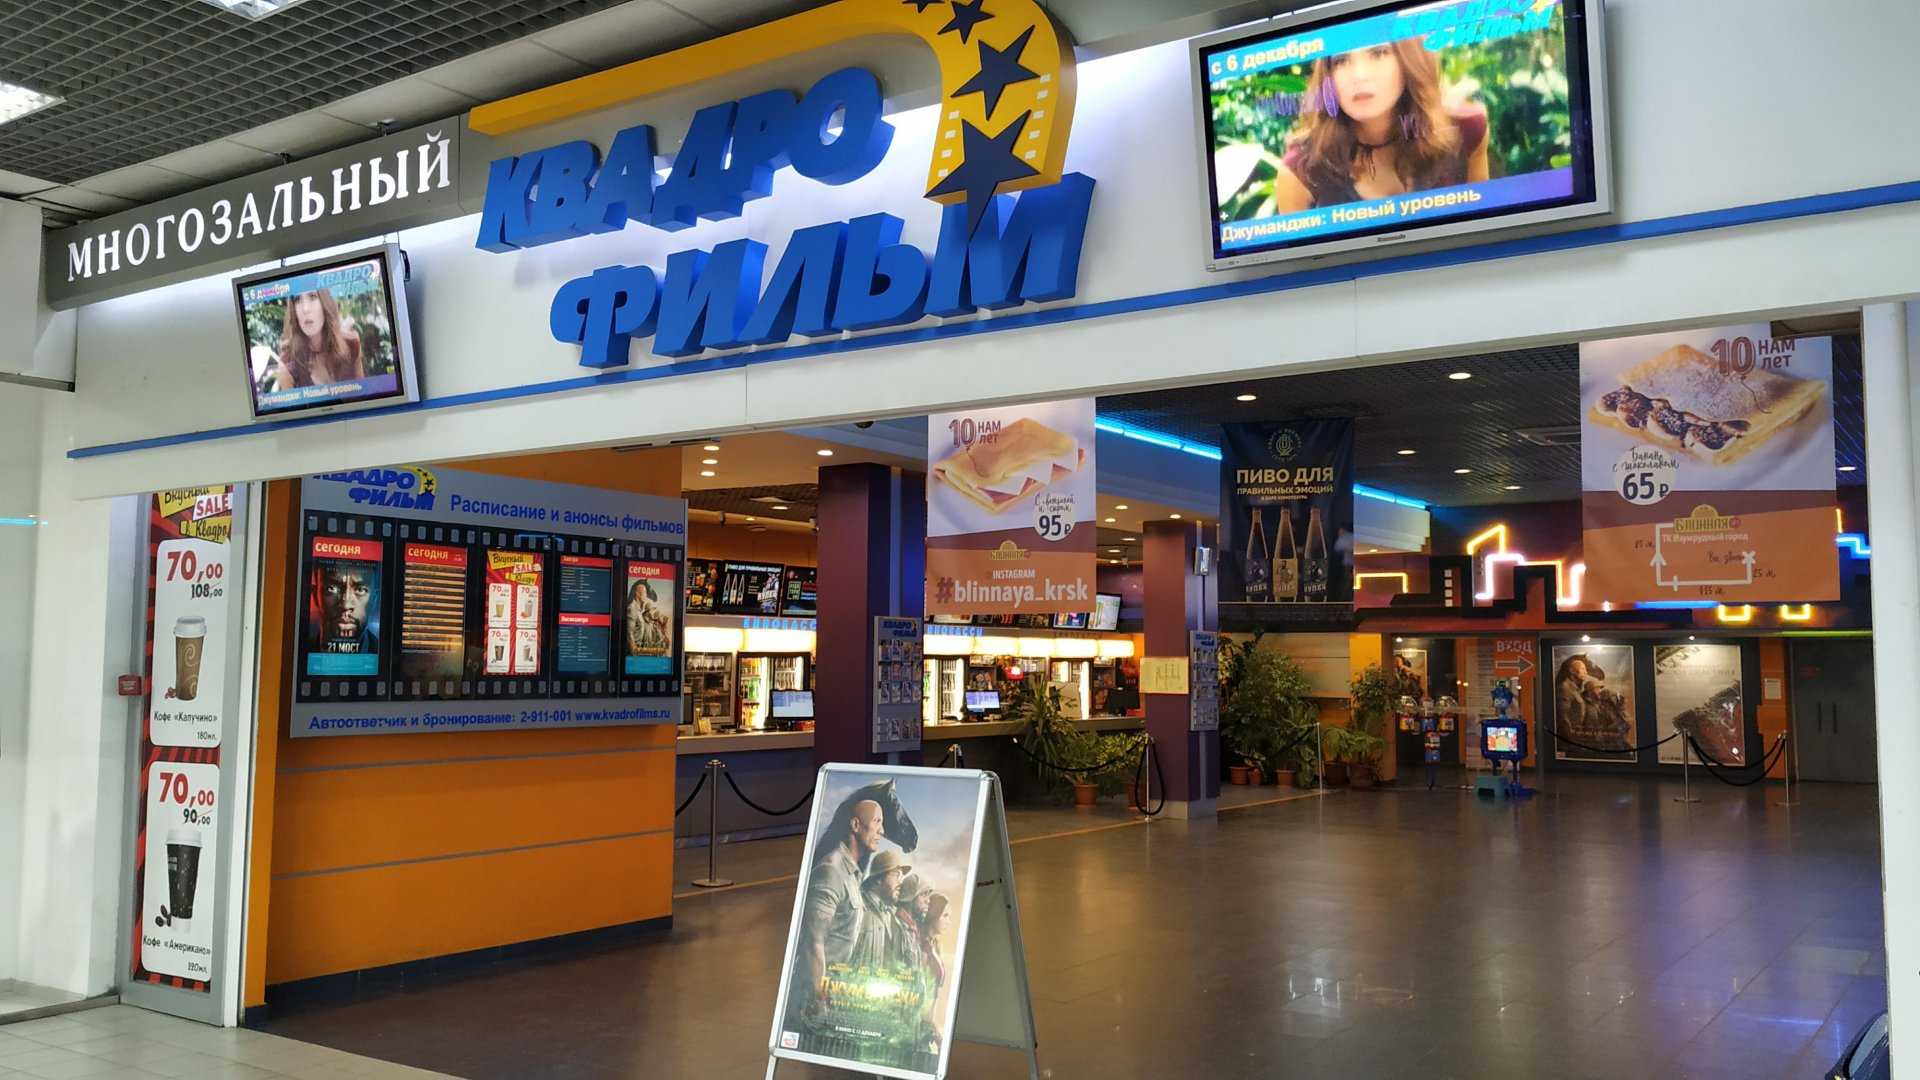 Кинотеатр красноярск на свободном расписание сегодня